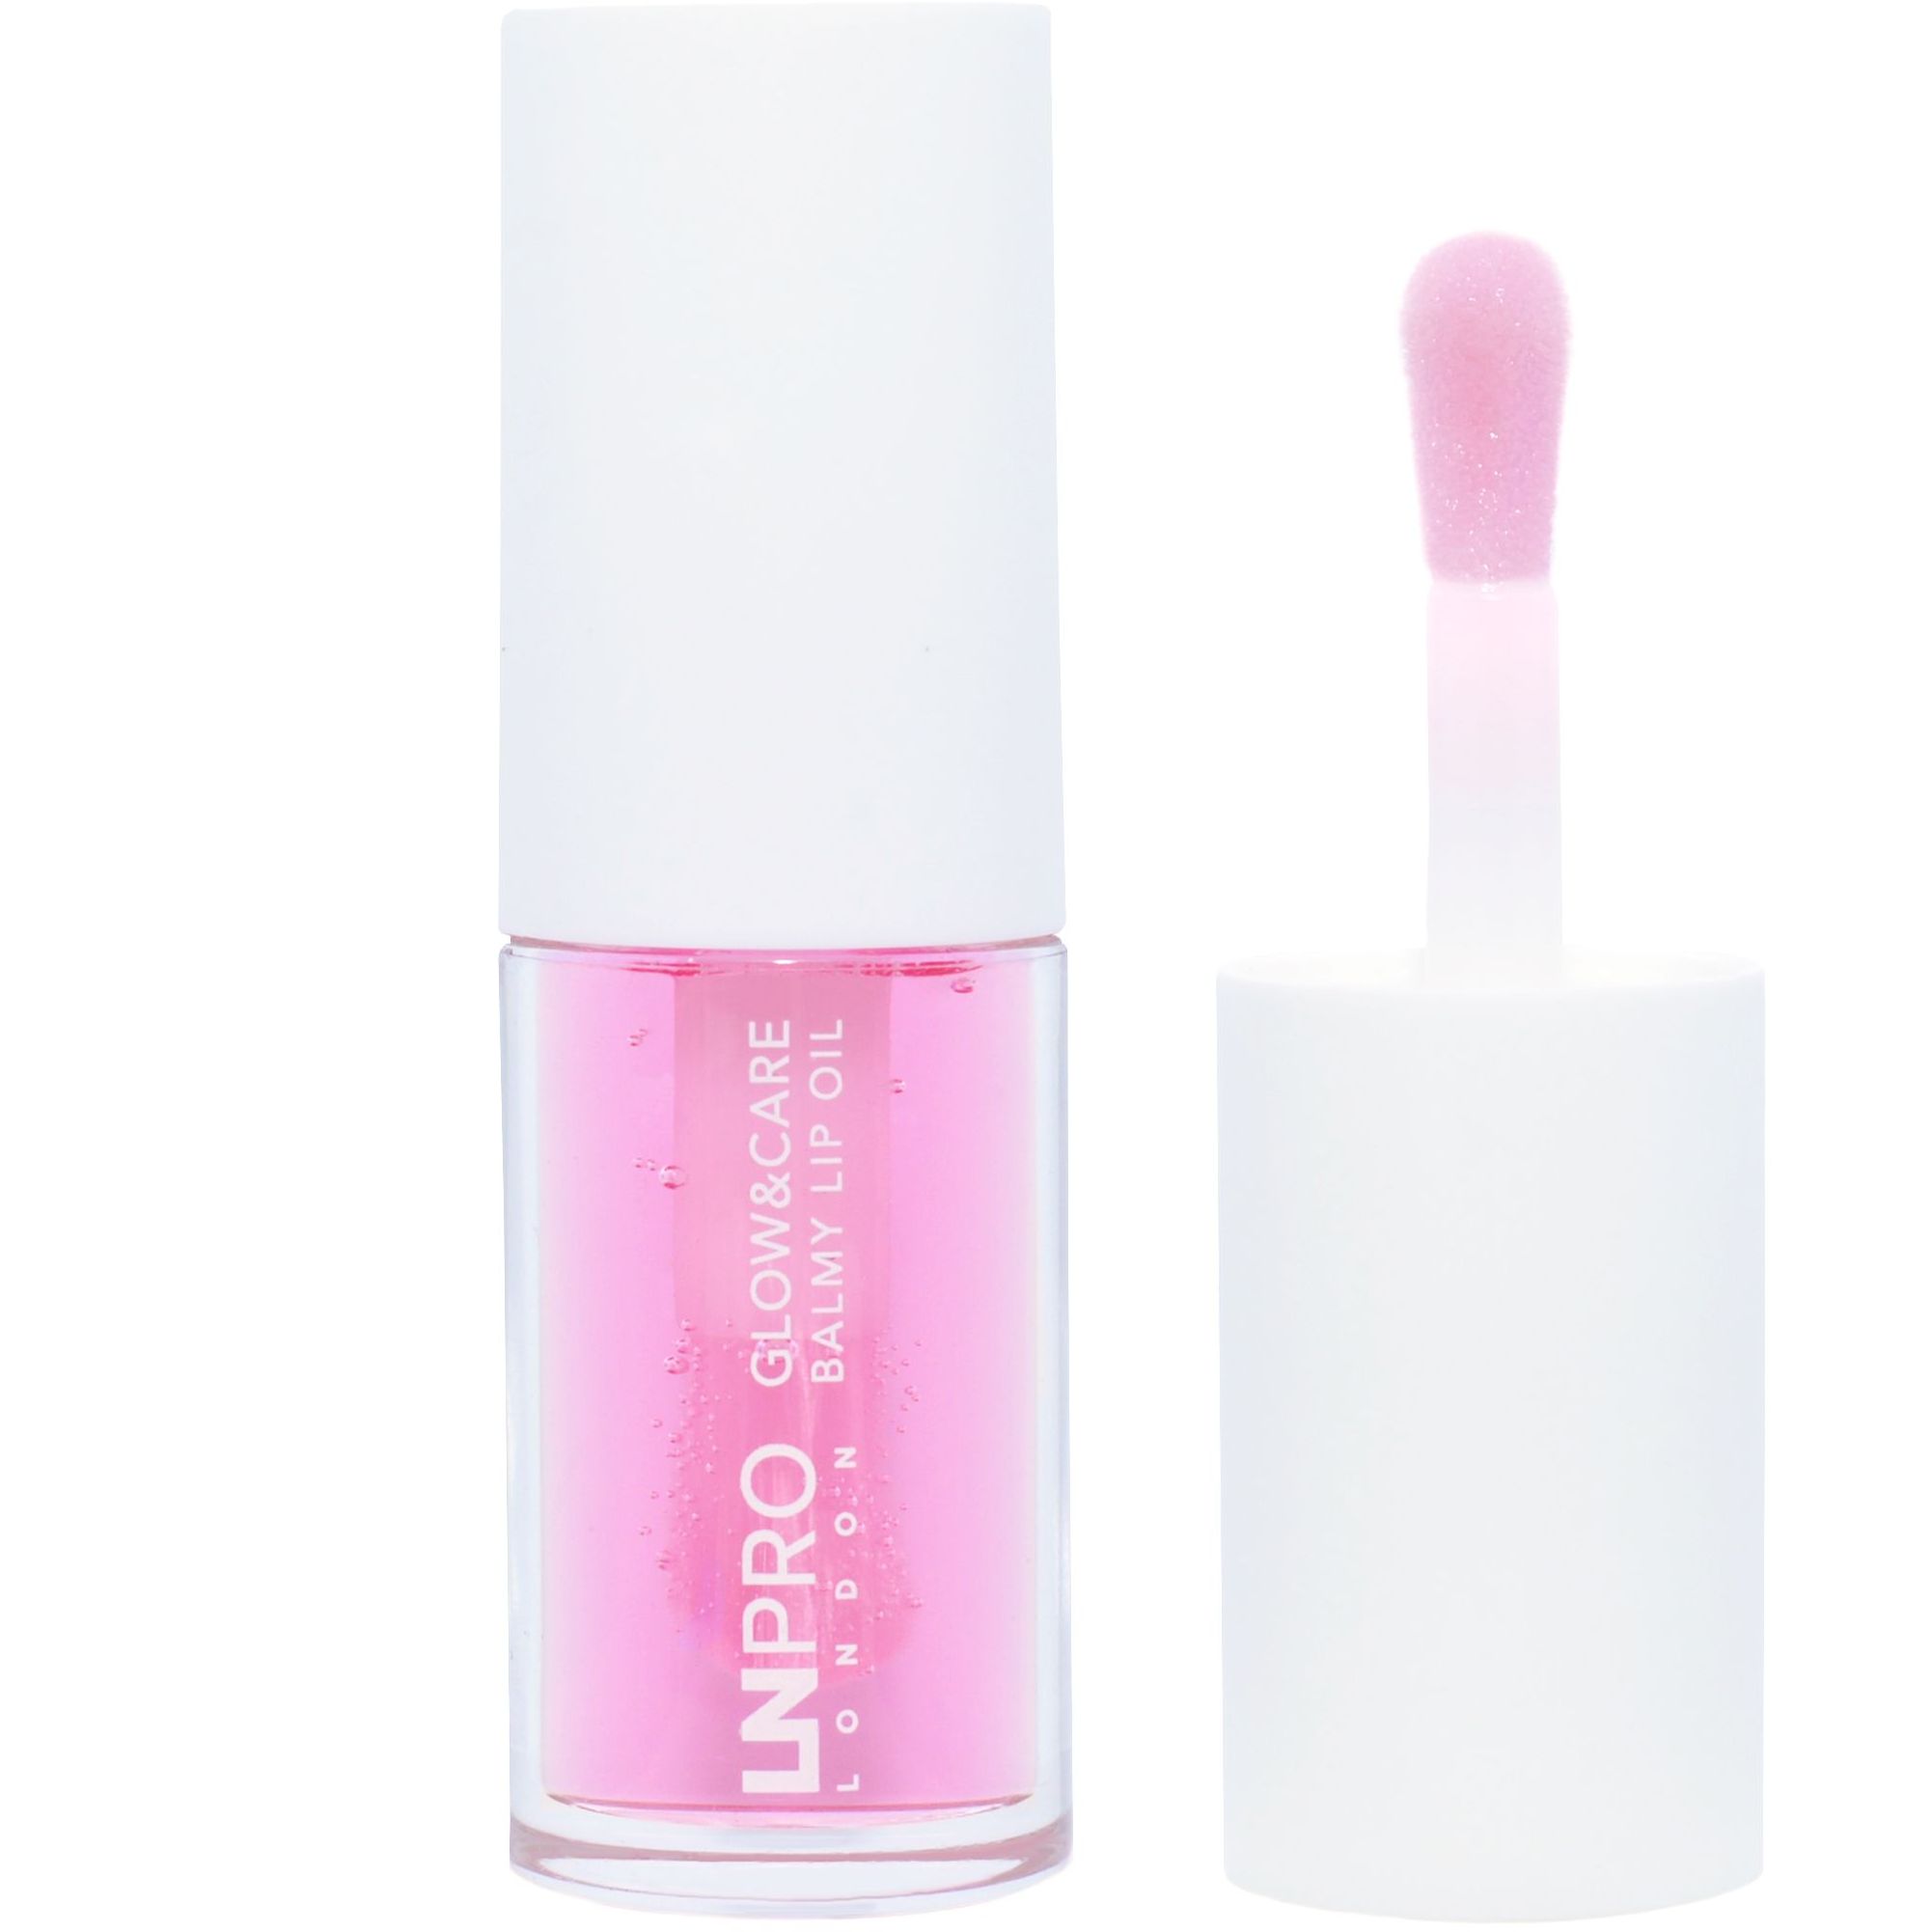 Олія-бальзам для губ LN Pro Glow & Care Balmy Lip Oil відтінок 103, 3.7 мл - фото 1